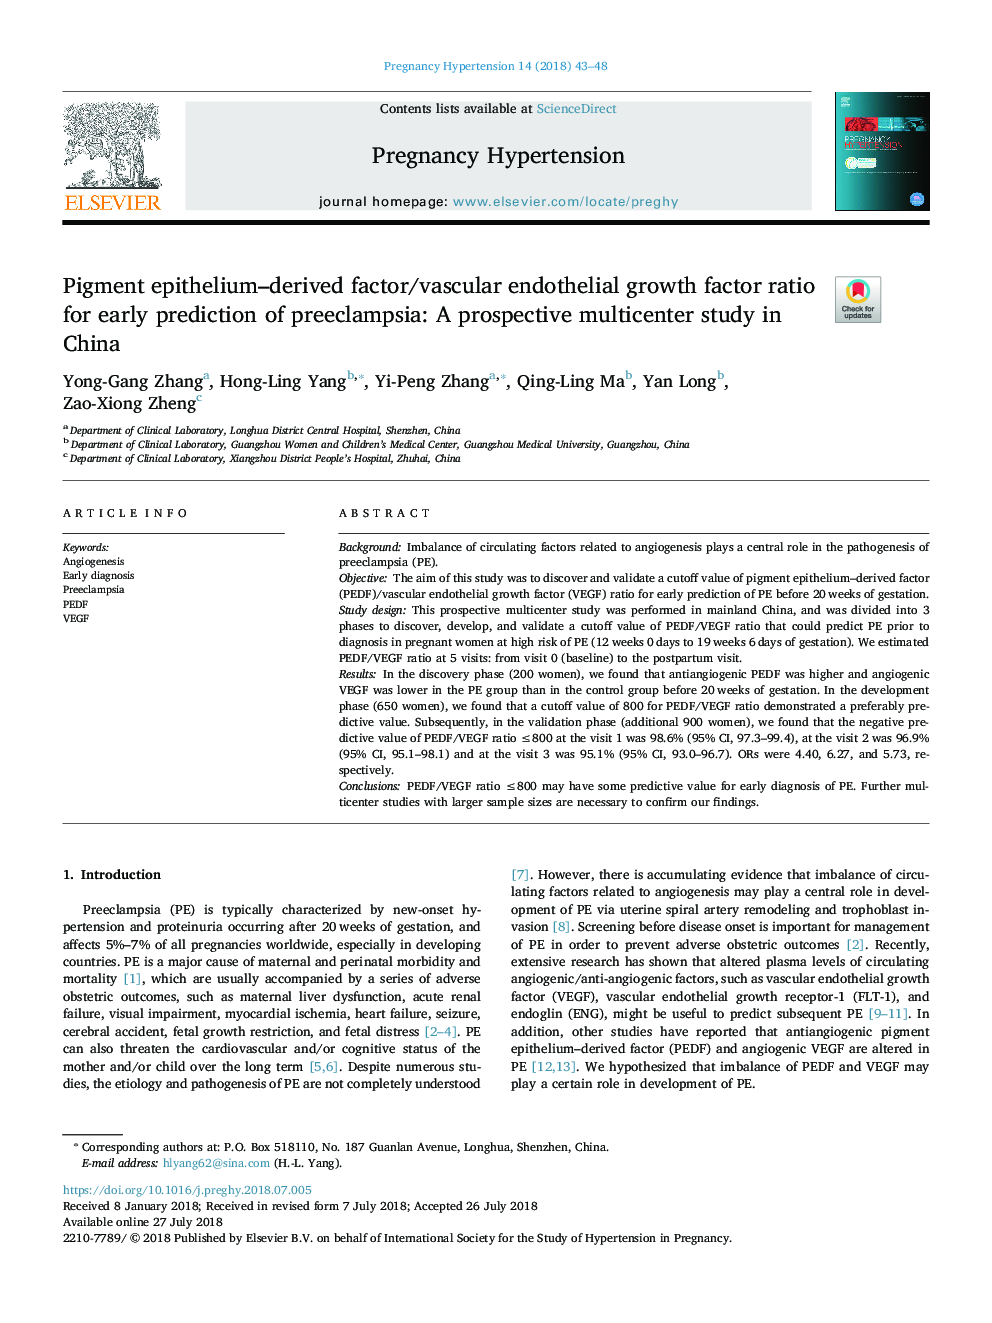 نسبت عامل فاکتور مشتق شده از اپیتلیوم رنگی / نسبت فاکتور رشد اندوتلیال عروقی برای پیشگویی اولیه پره اکلامپسی: یک مطالعه چند بعدی مرکزیت در چین 